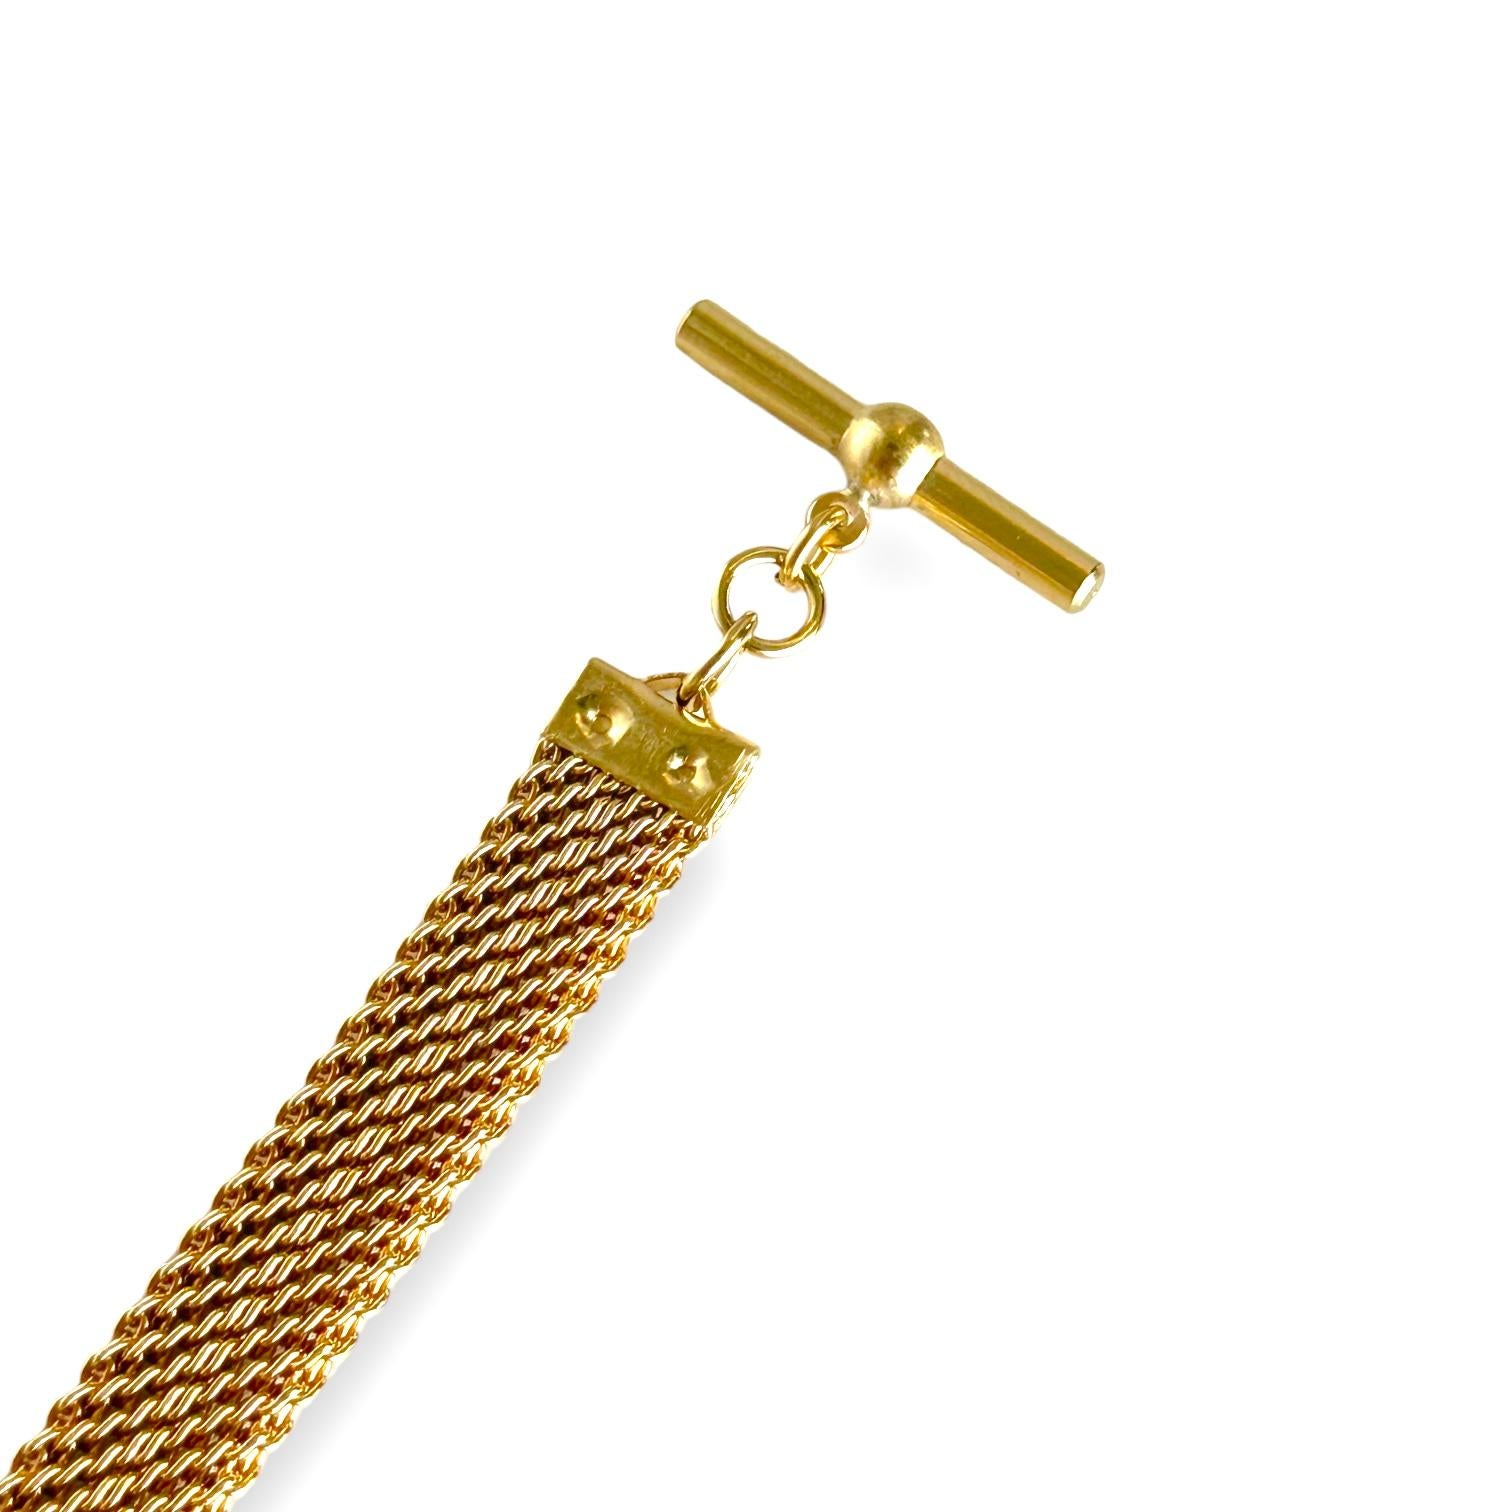 Vintage Victorian Mesh Armband in Gelbgold Farbe.
Länge des Armbands: 6,25 Zoll/16 cm.
Kettenbreite: 8,83 mm.
Metall: Kupfer.
Gesamtgewicht 17.20 Gramm.